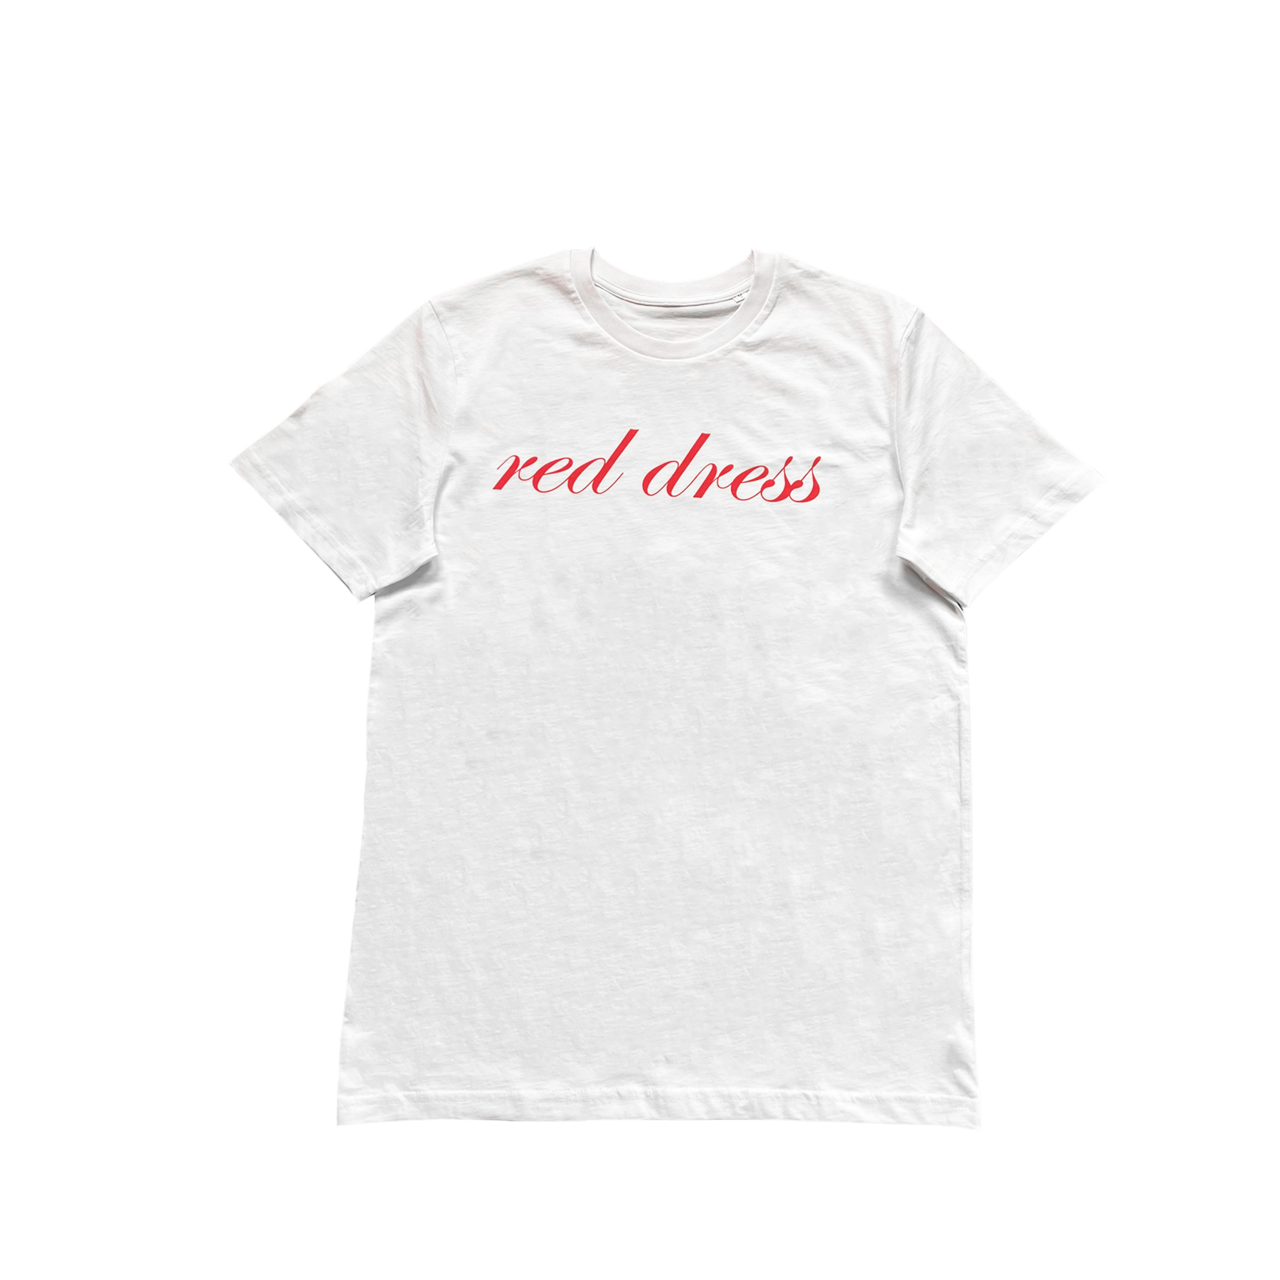 Jonas Brothers - Red Dress White T-Shirt